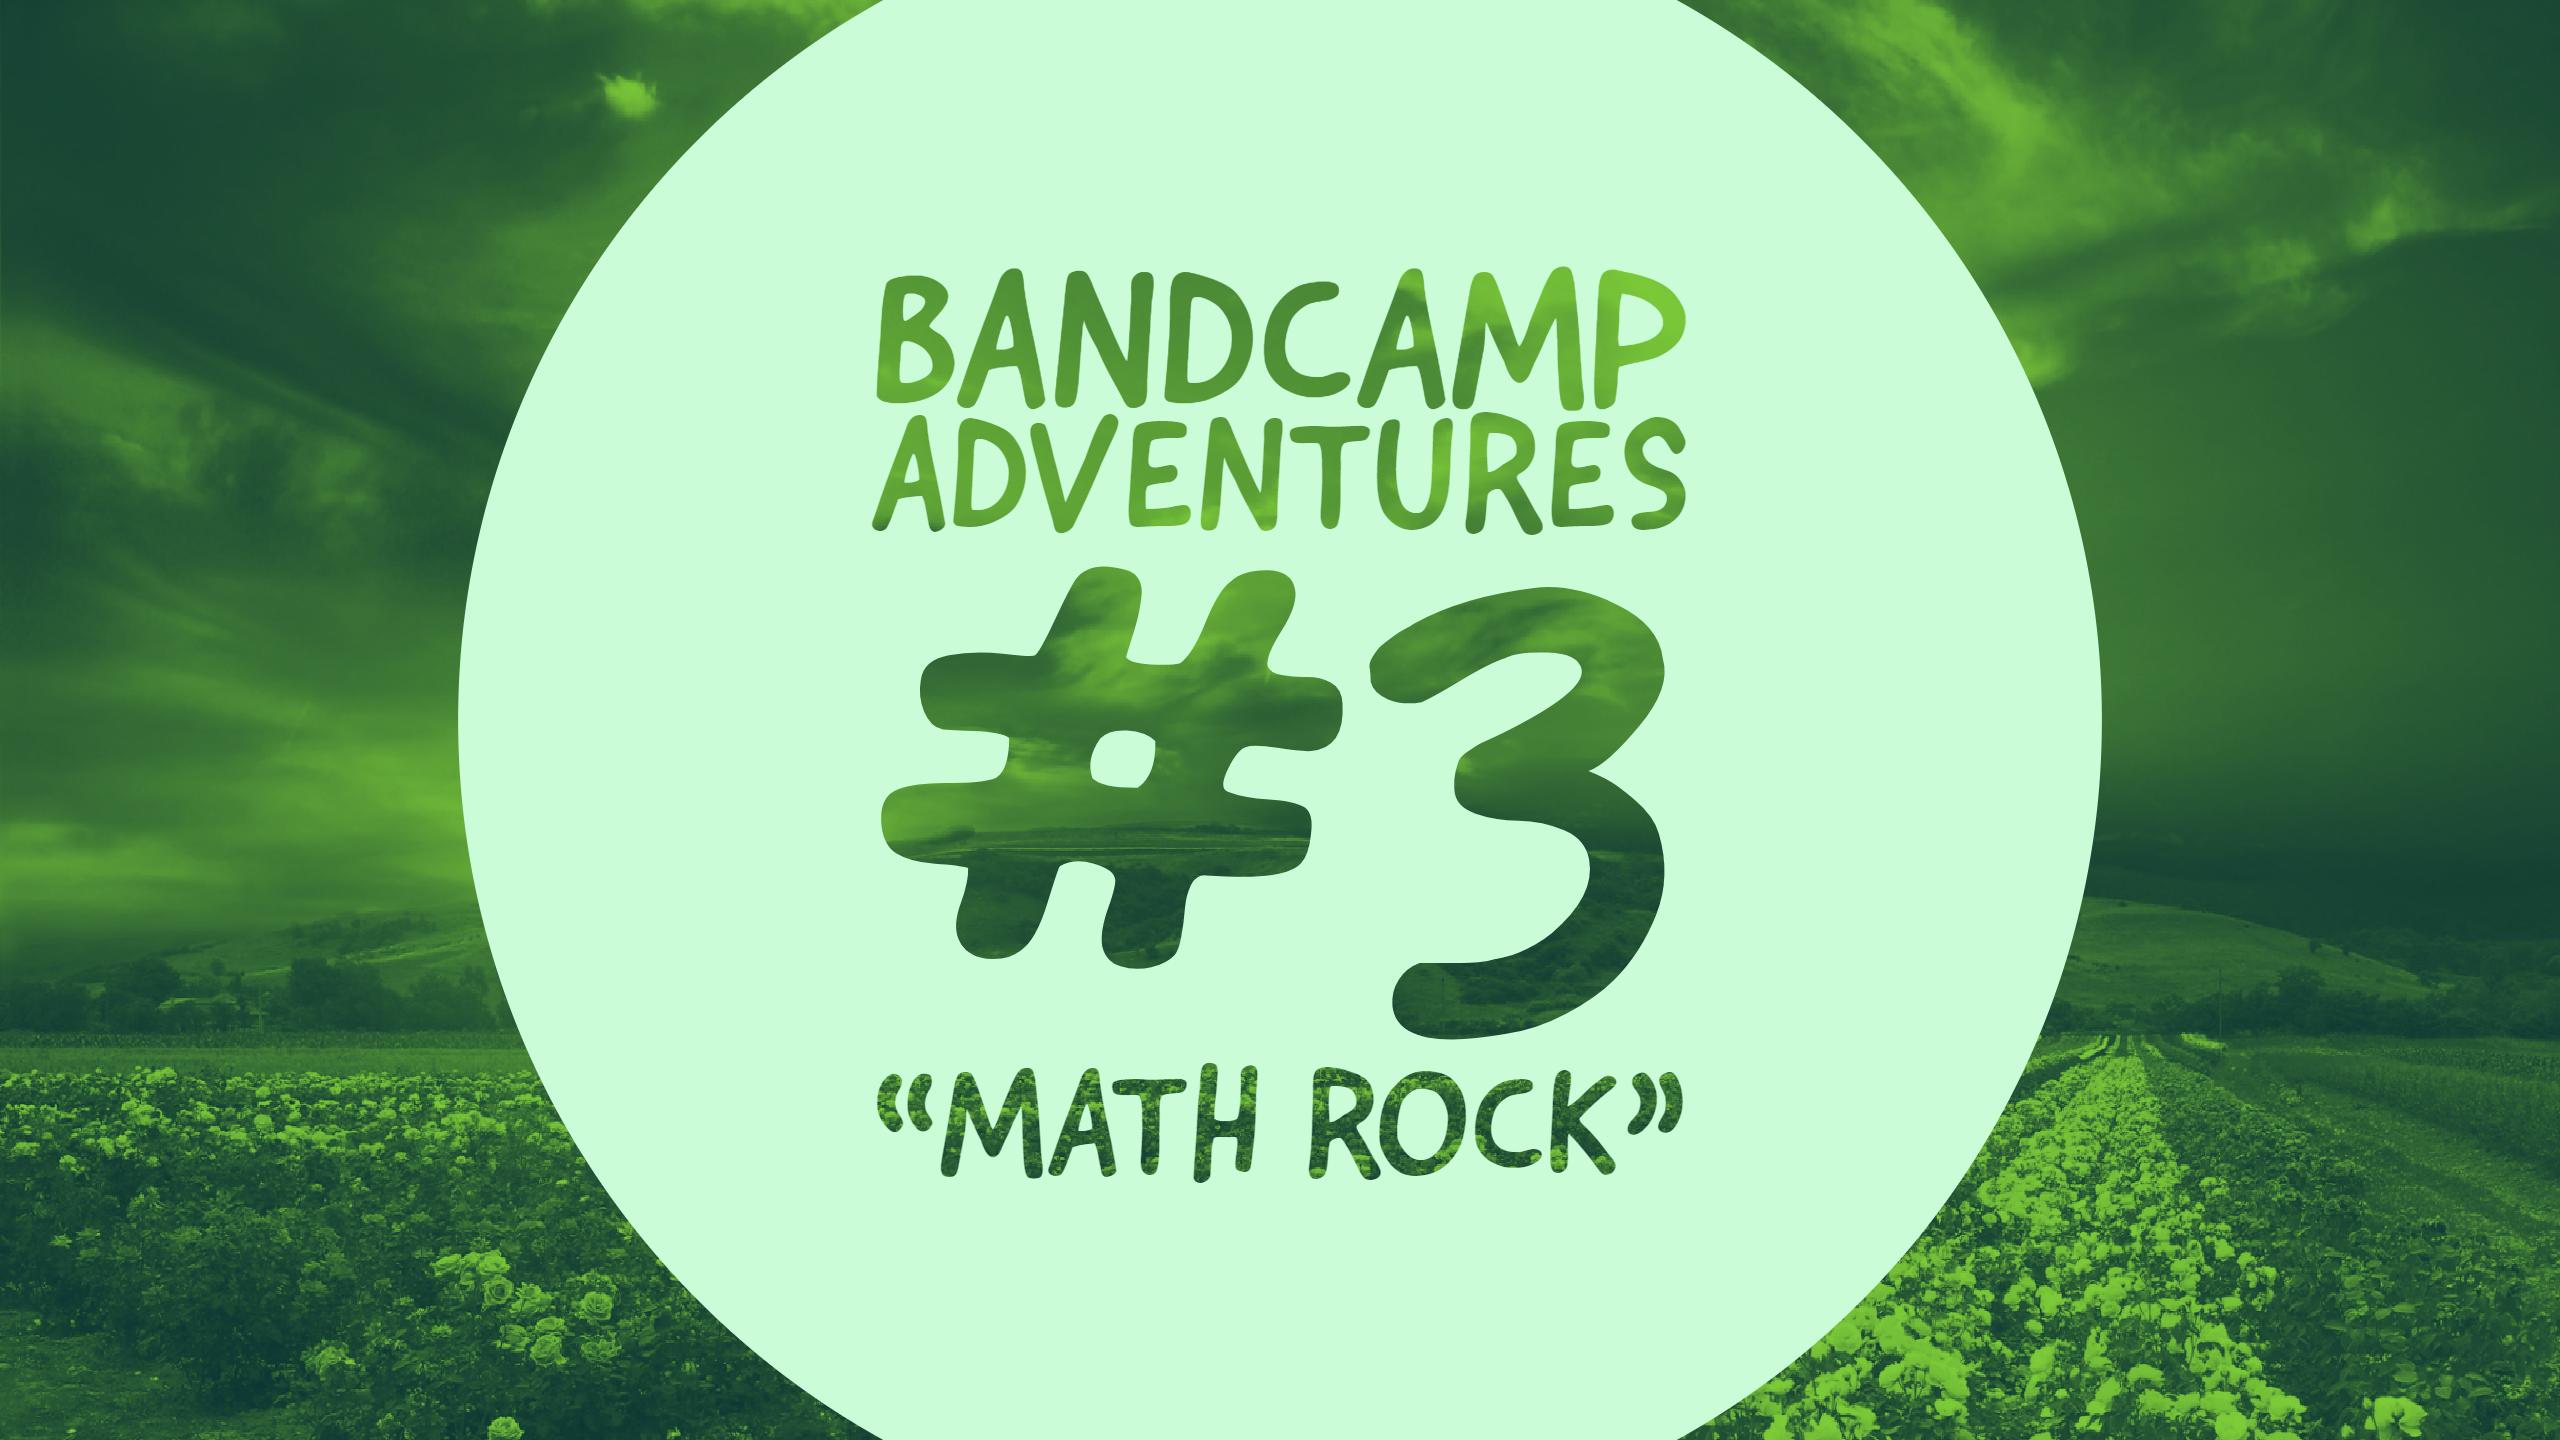 Bandcamp Adventures #3: “Math Rock”